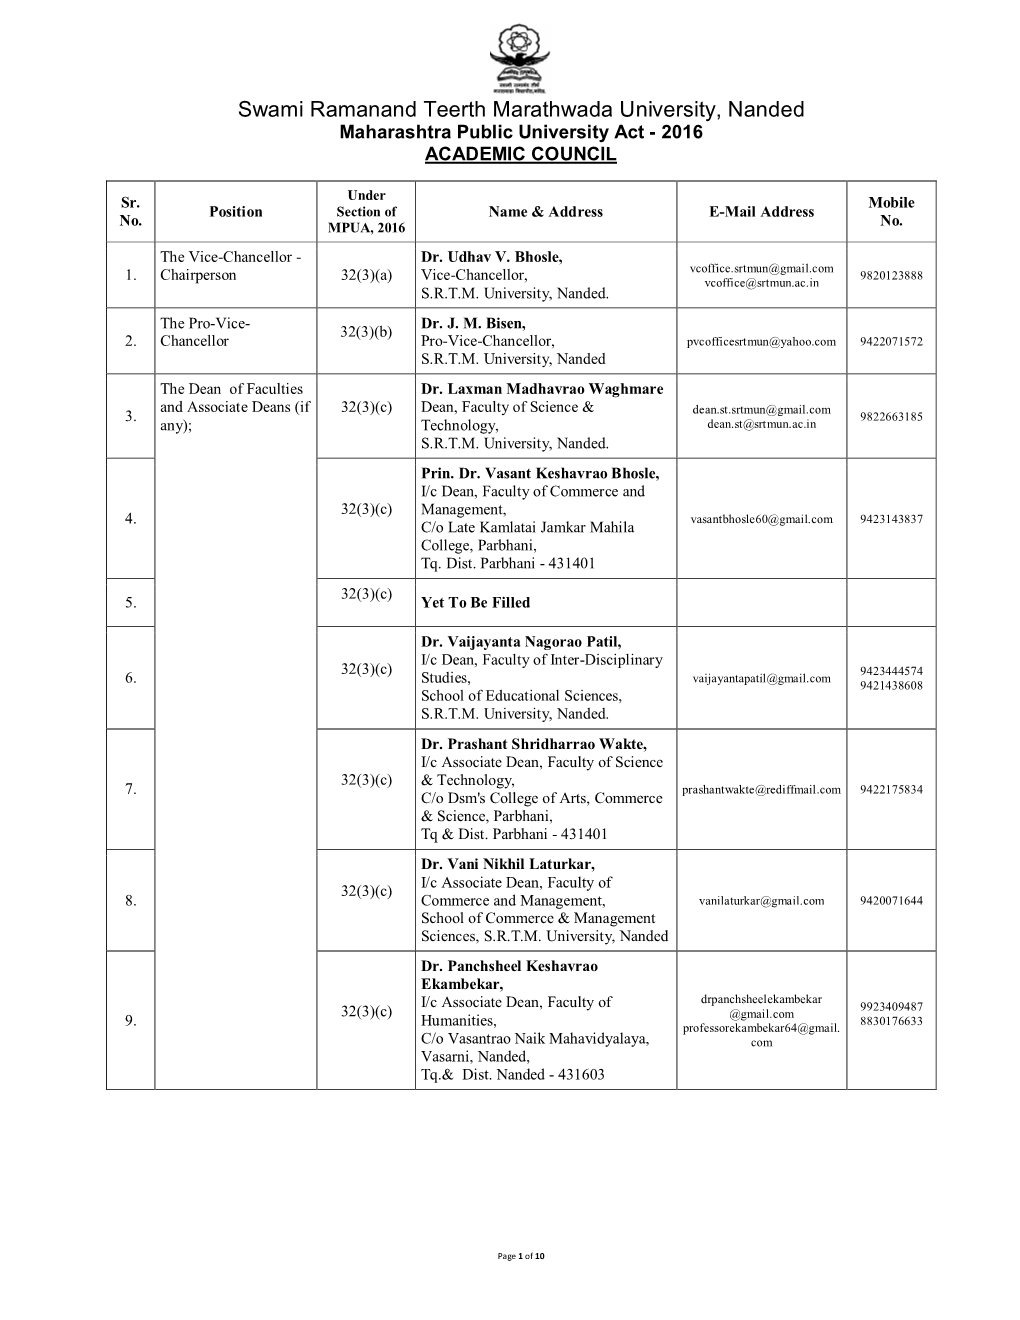 Swami Ramanand Teerth Marathwada University, Nanded Maharashtra Public University Act - 2016 ACADEMIC COUNCIL